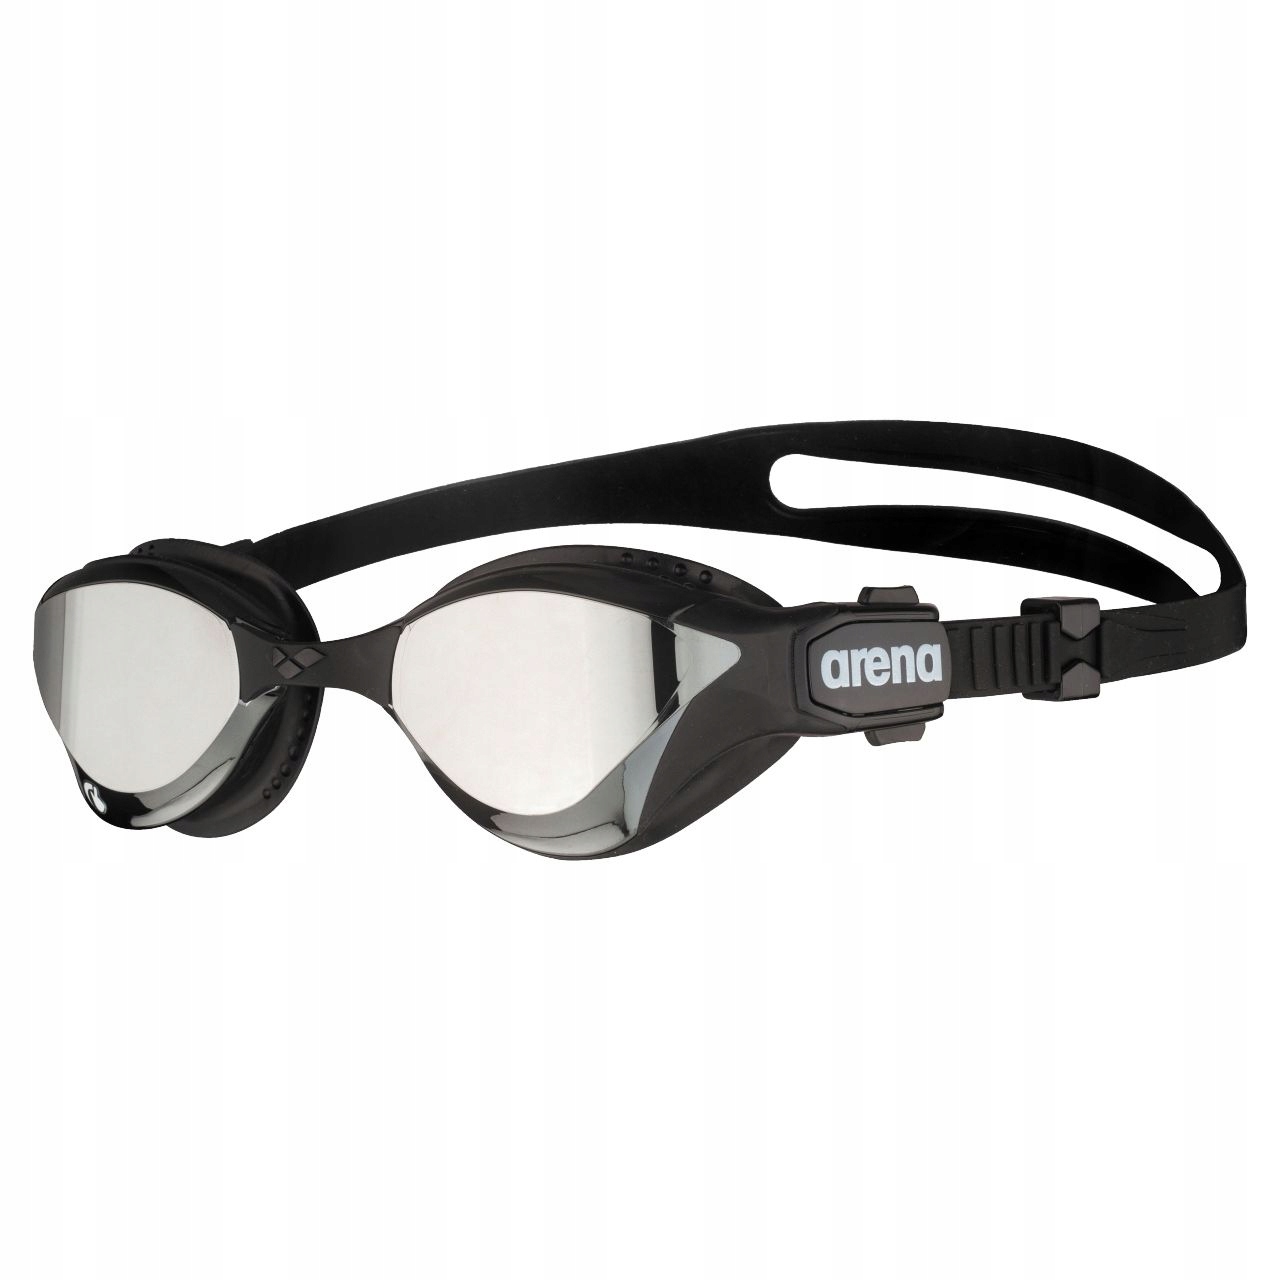 Очки для плавания cobra. Плавательные очки Арена Кобра. Плавательные очки Arena Cobra. Arena очки Cobra Core swipe. Arena Cobra Core swipe Mirror очки для плавания.